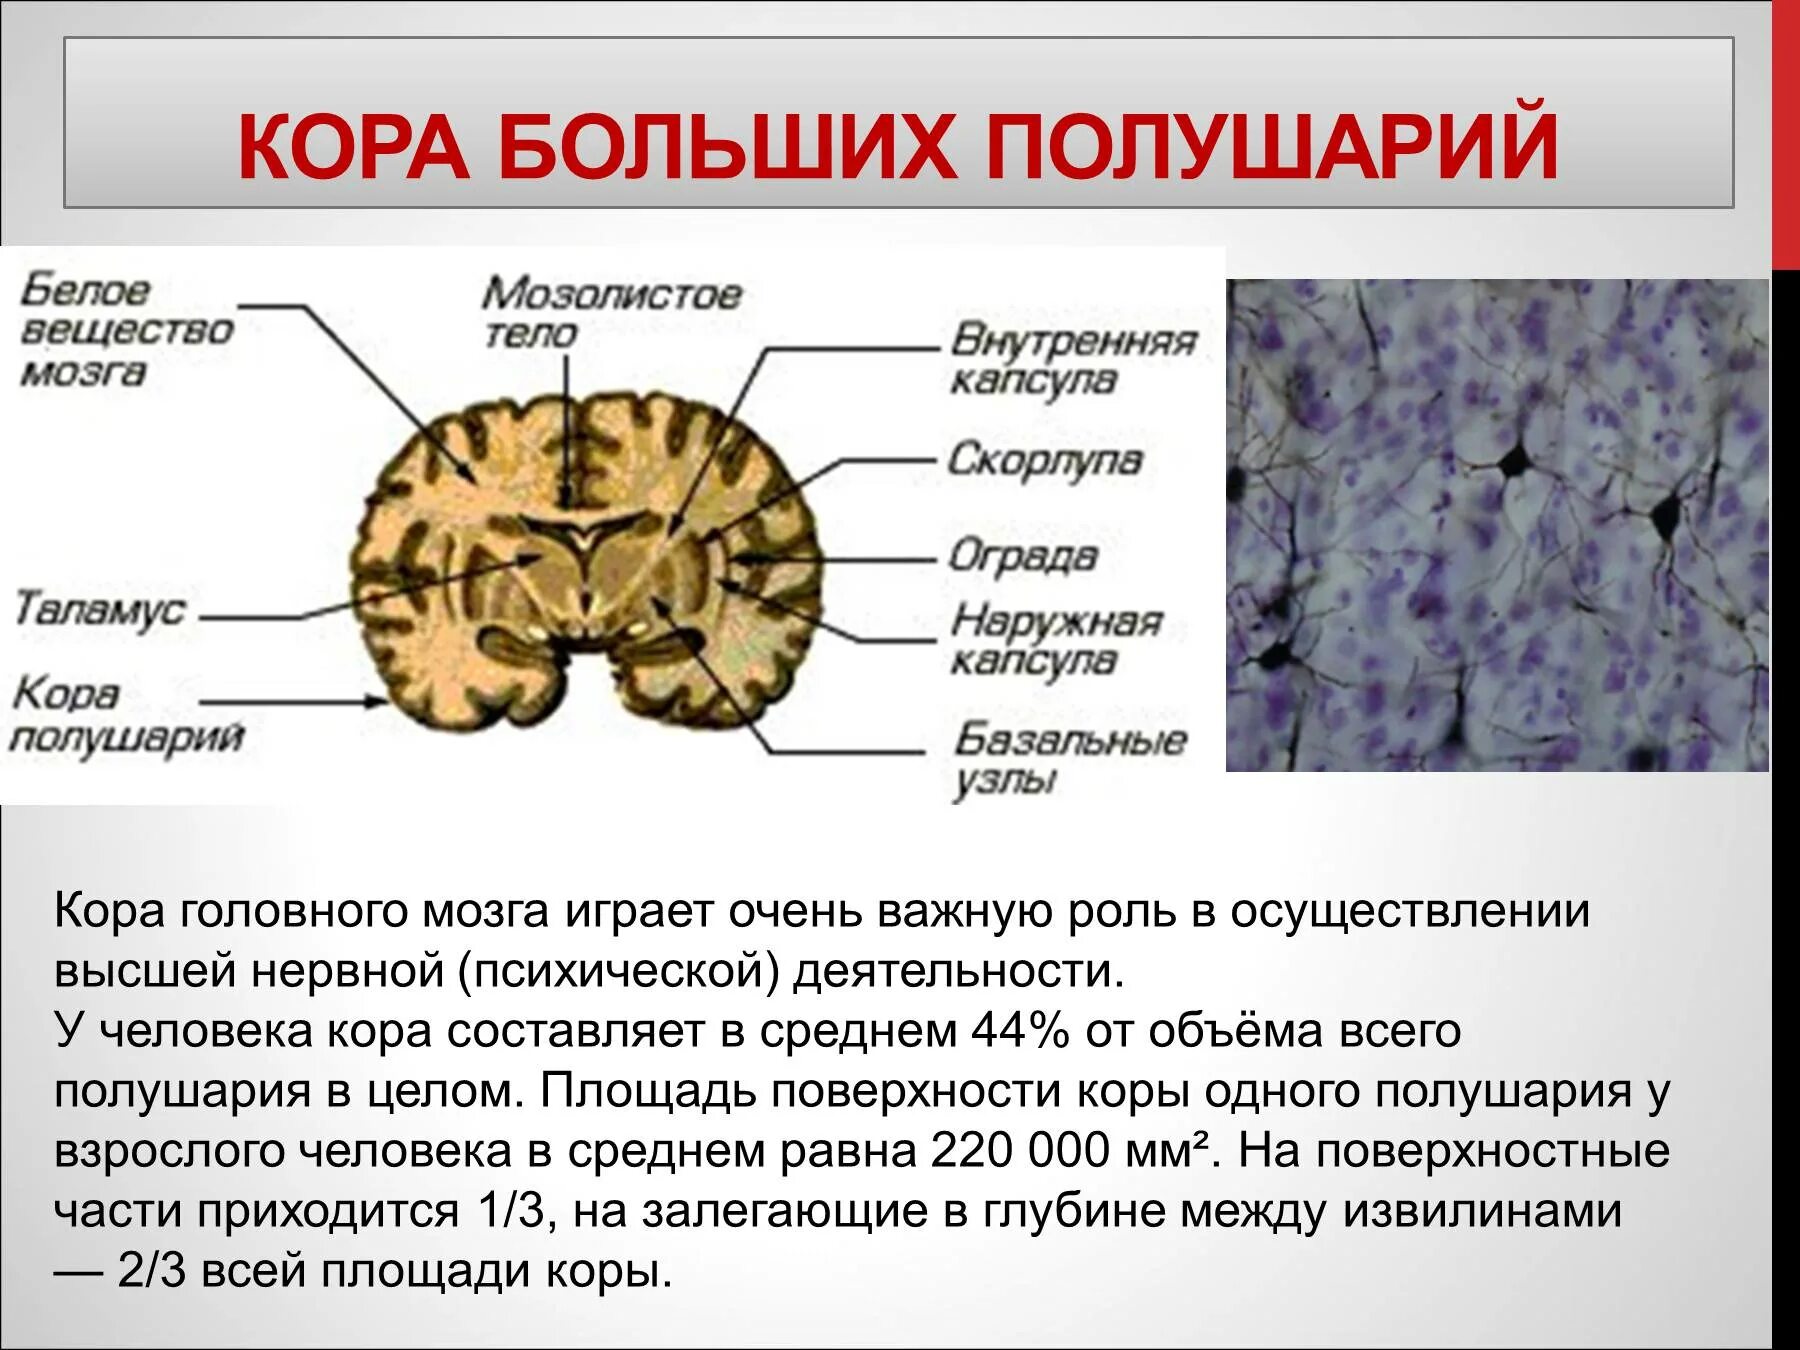 Функции коры переднего мозга